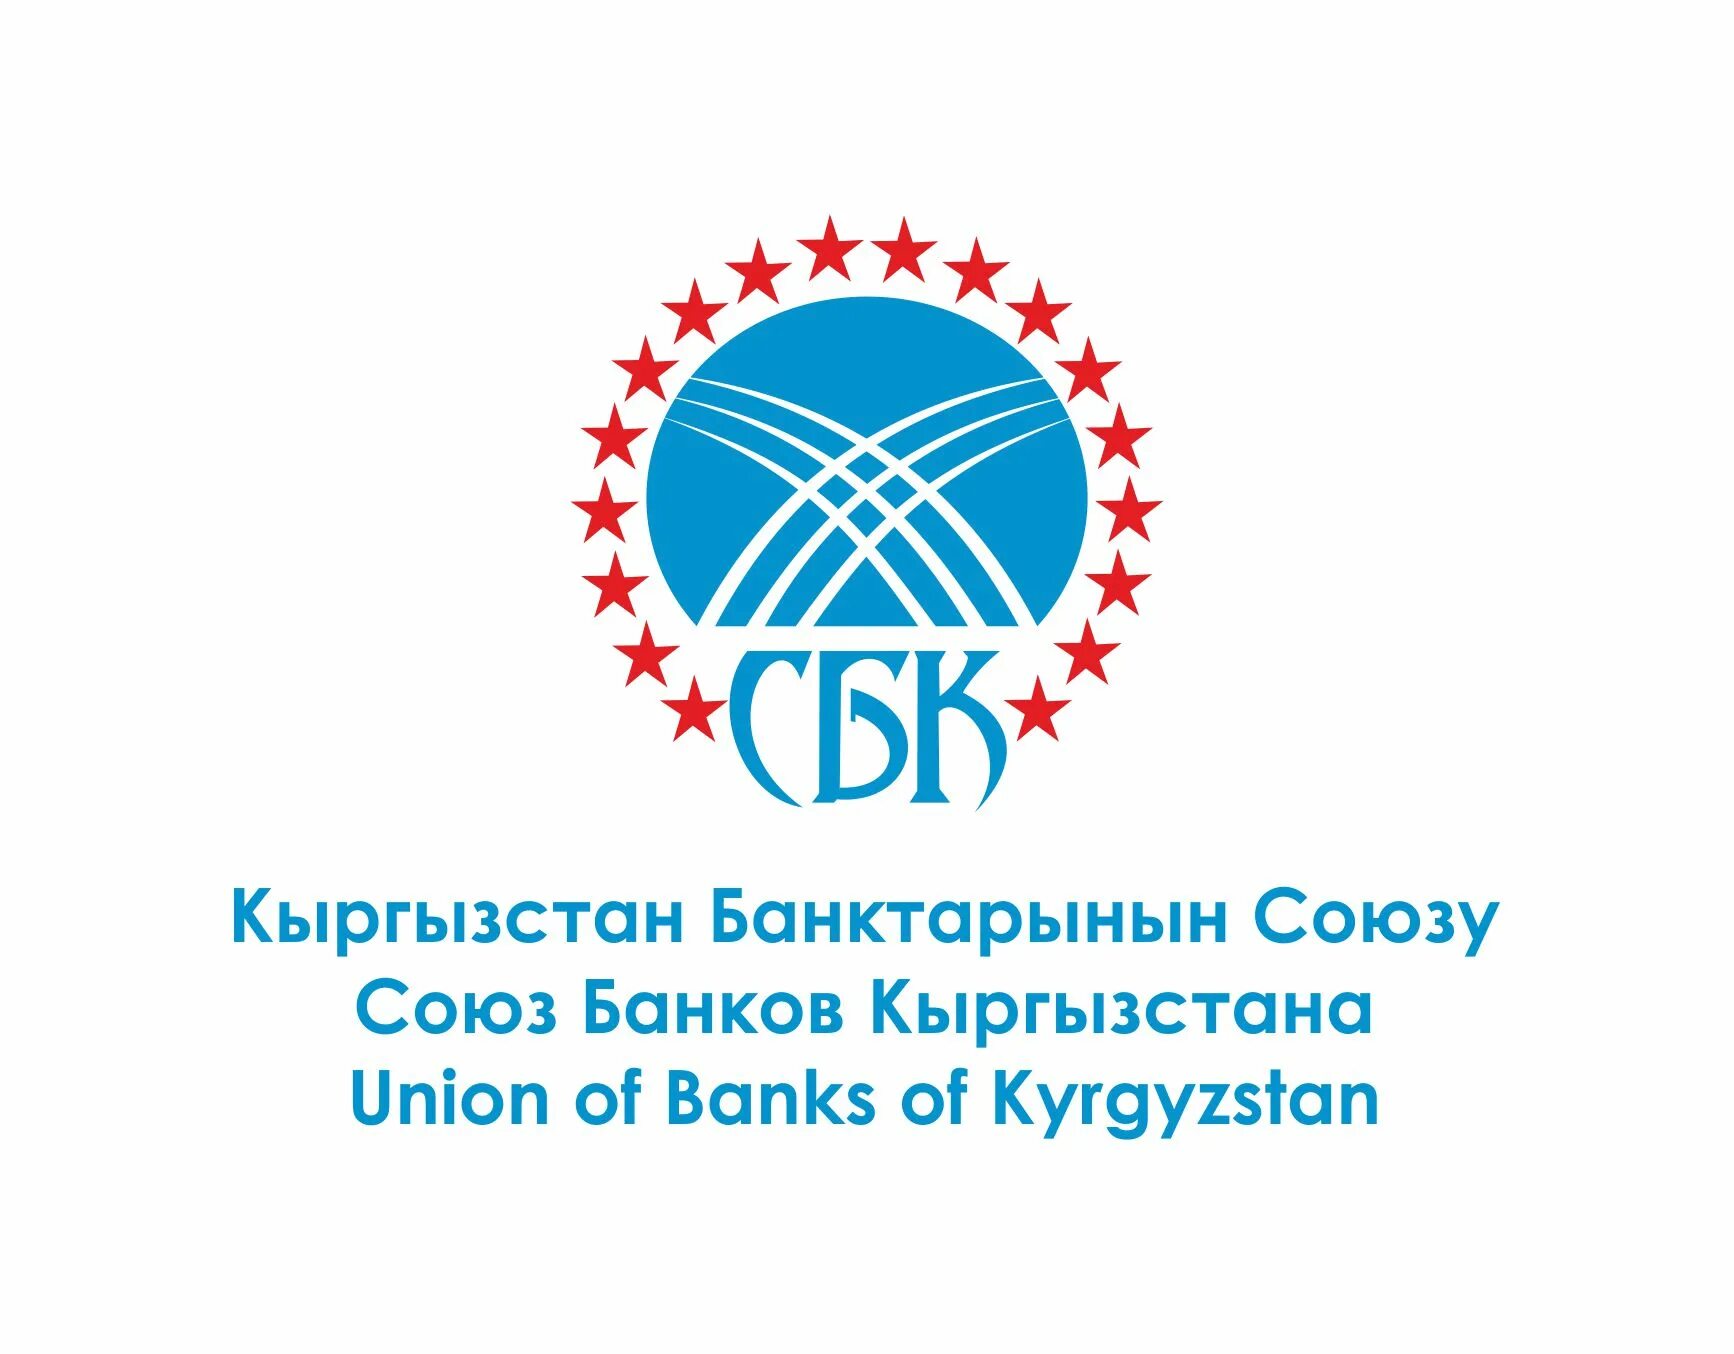 Bank kyrgyzstan. Союз банков Кыргызстана. Кыргызский логотип. Кыргызстан банк лого. Киргизские банки логотипы.